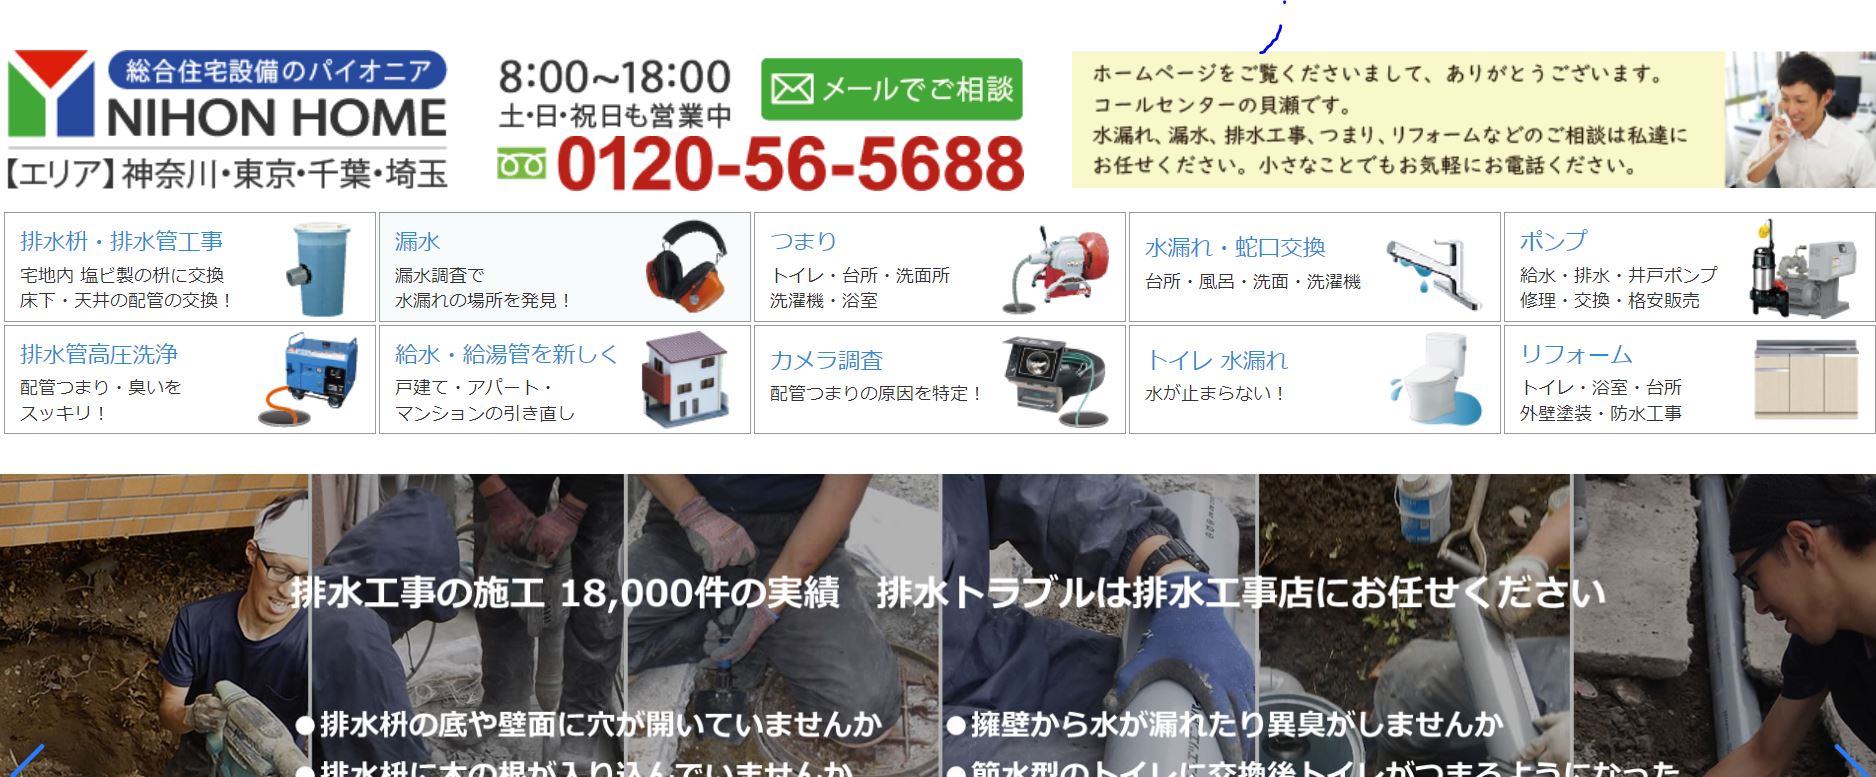 日本ホーム公式サイトの画像